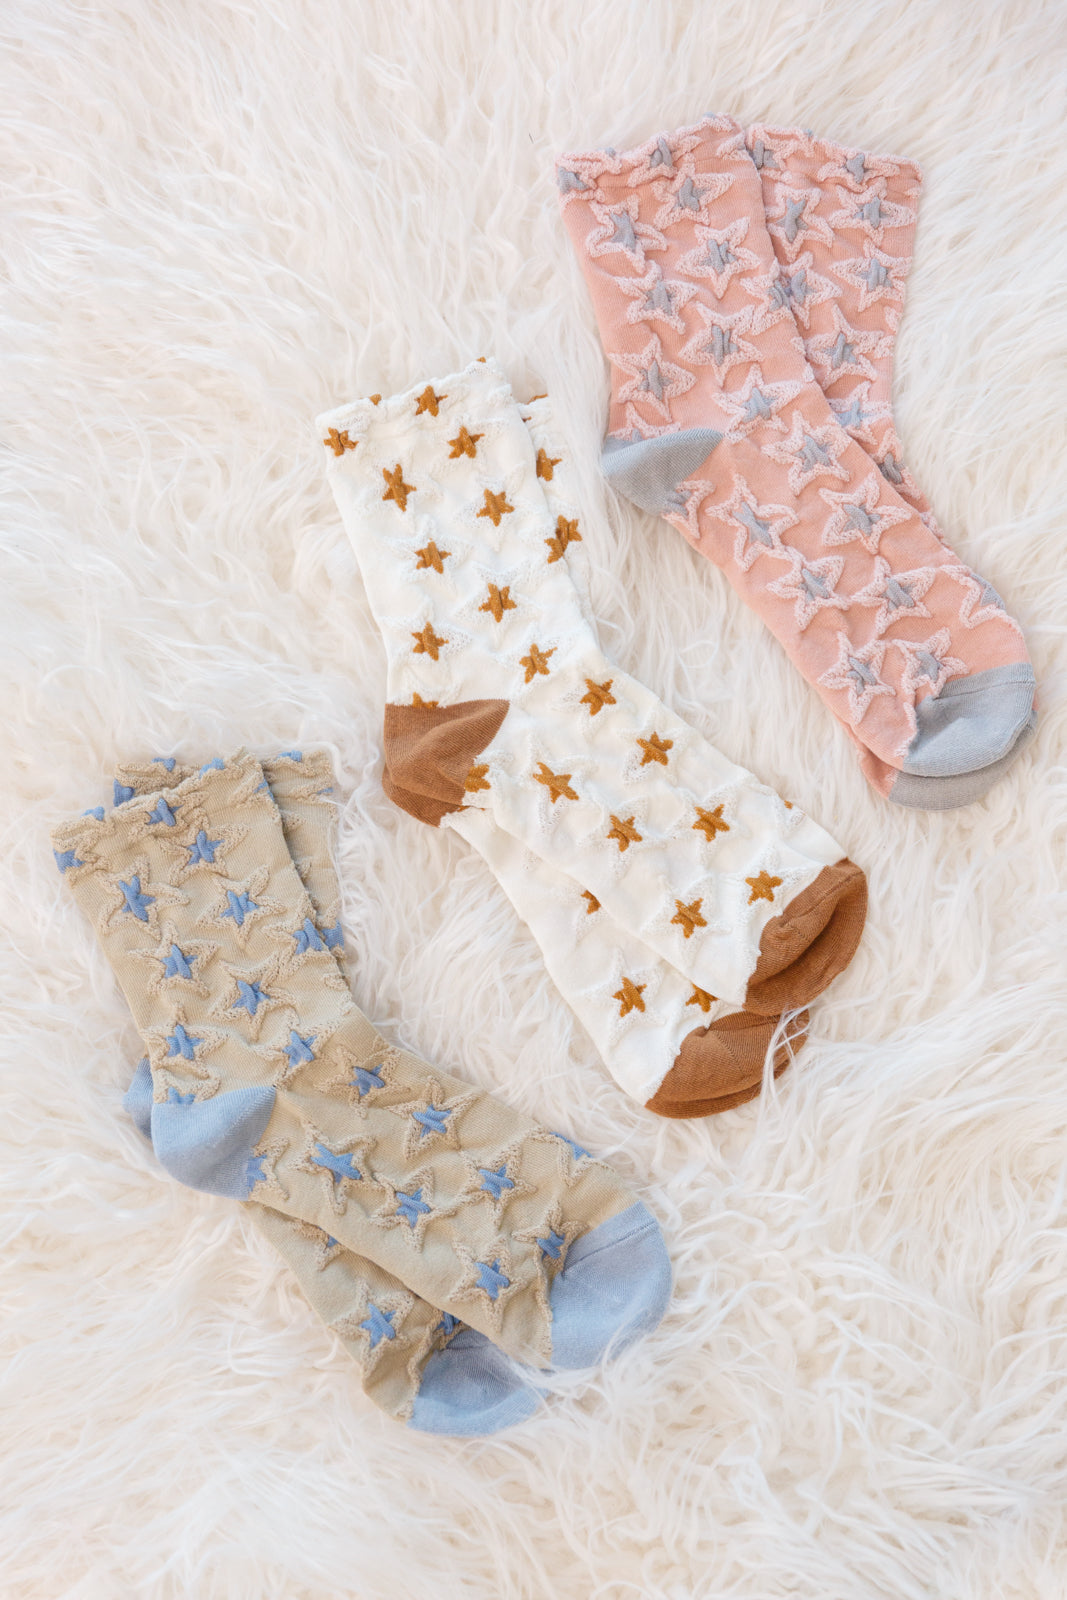 Star Design Socks In White - 11/22/2022